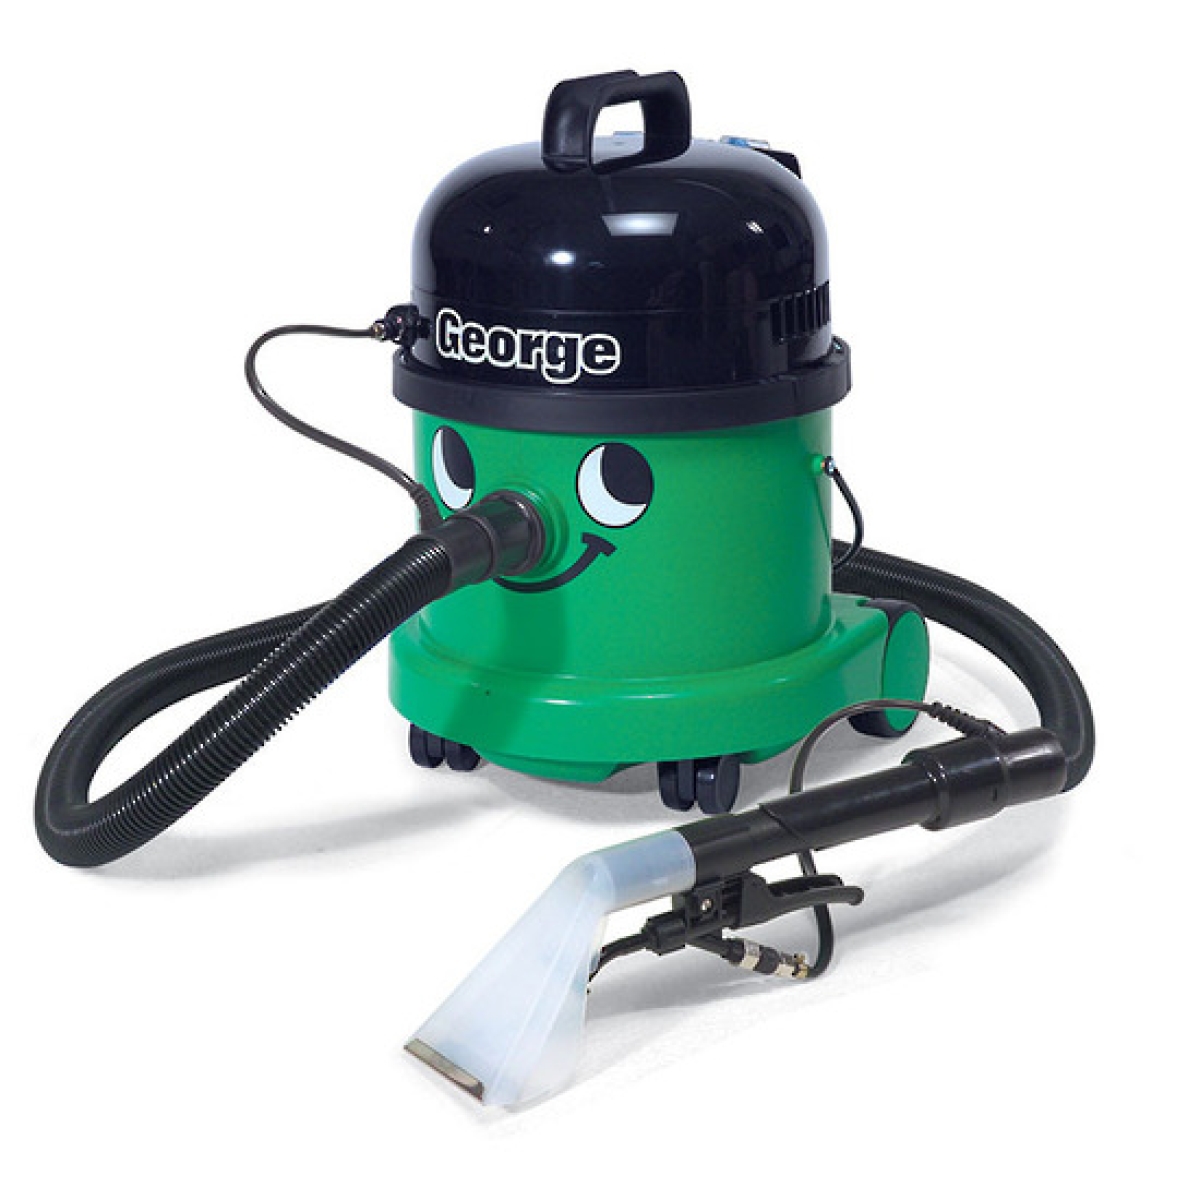 Numatic George 3 in 1 Wet & Dry Vacuum Cleaner 15L GVE370-2